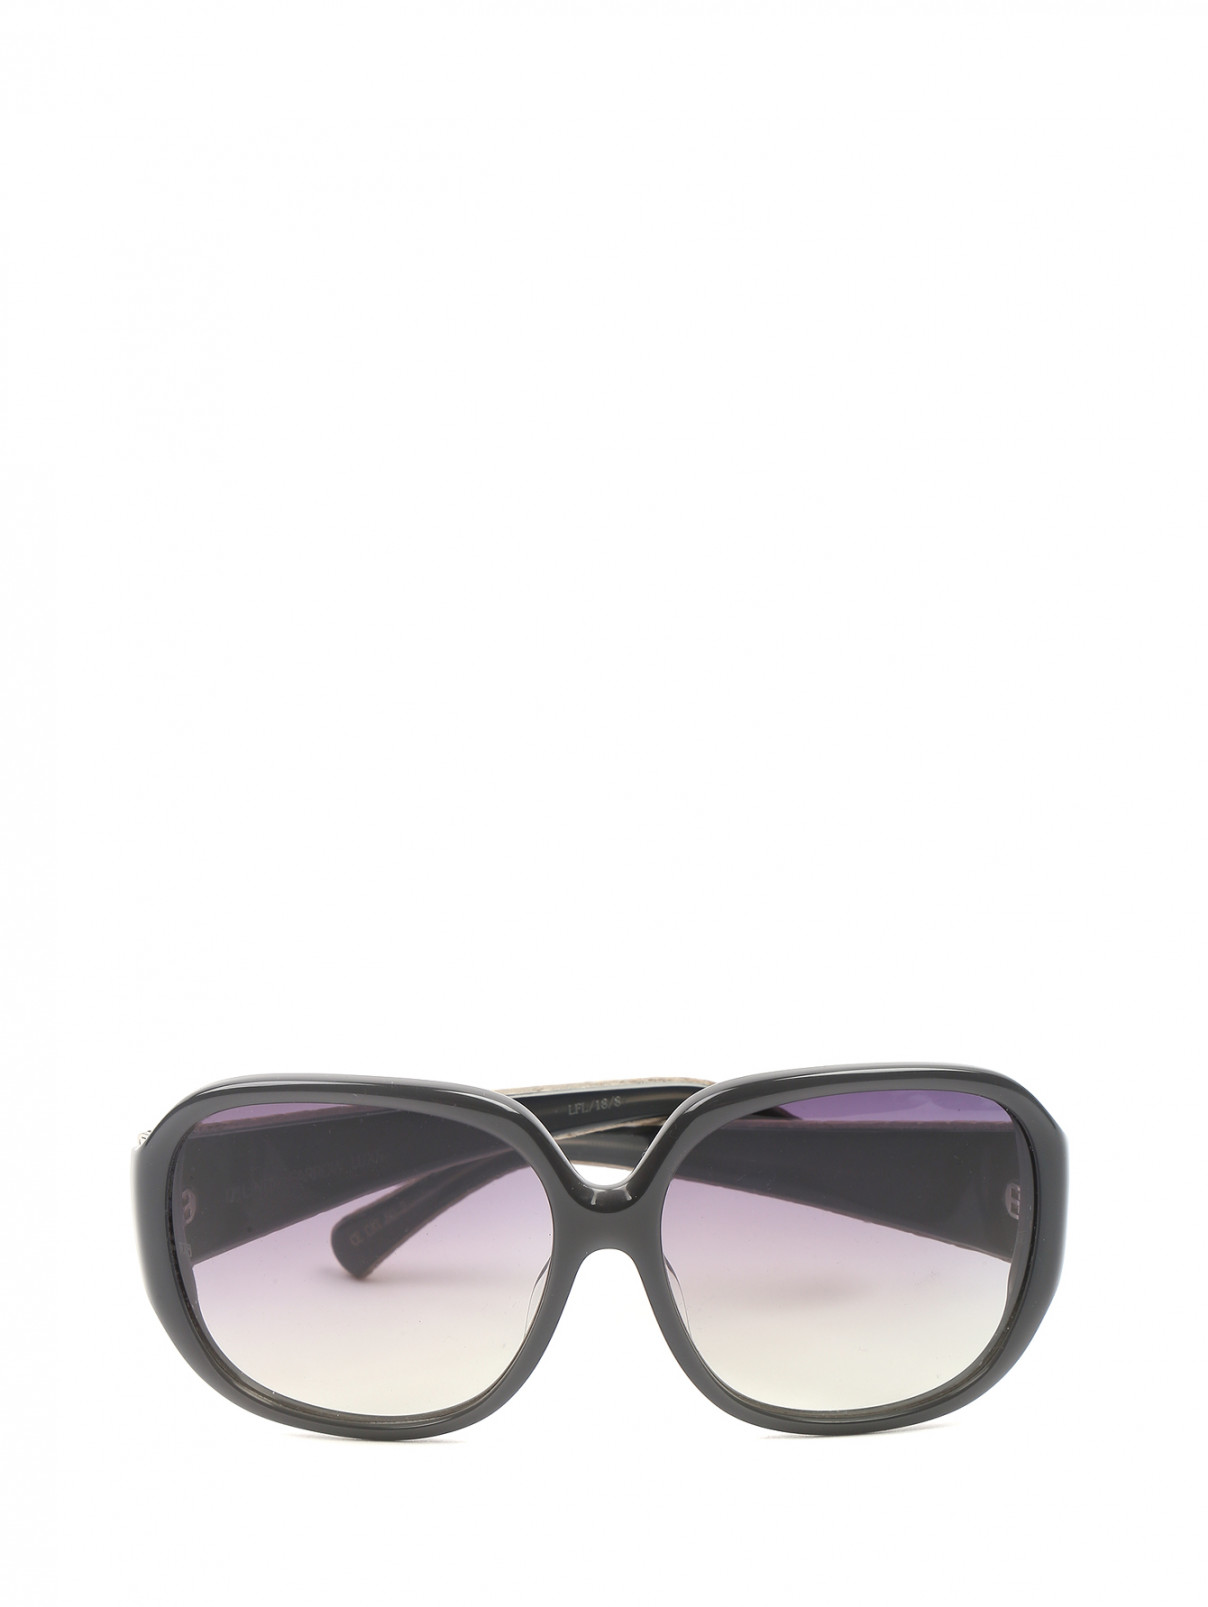 Cолнцезащитные очки в пластиковой оправе Linda Farrow  –  Общий вид  – Цвет:  Серый